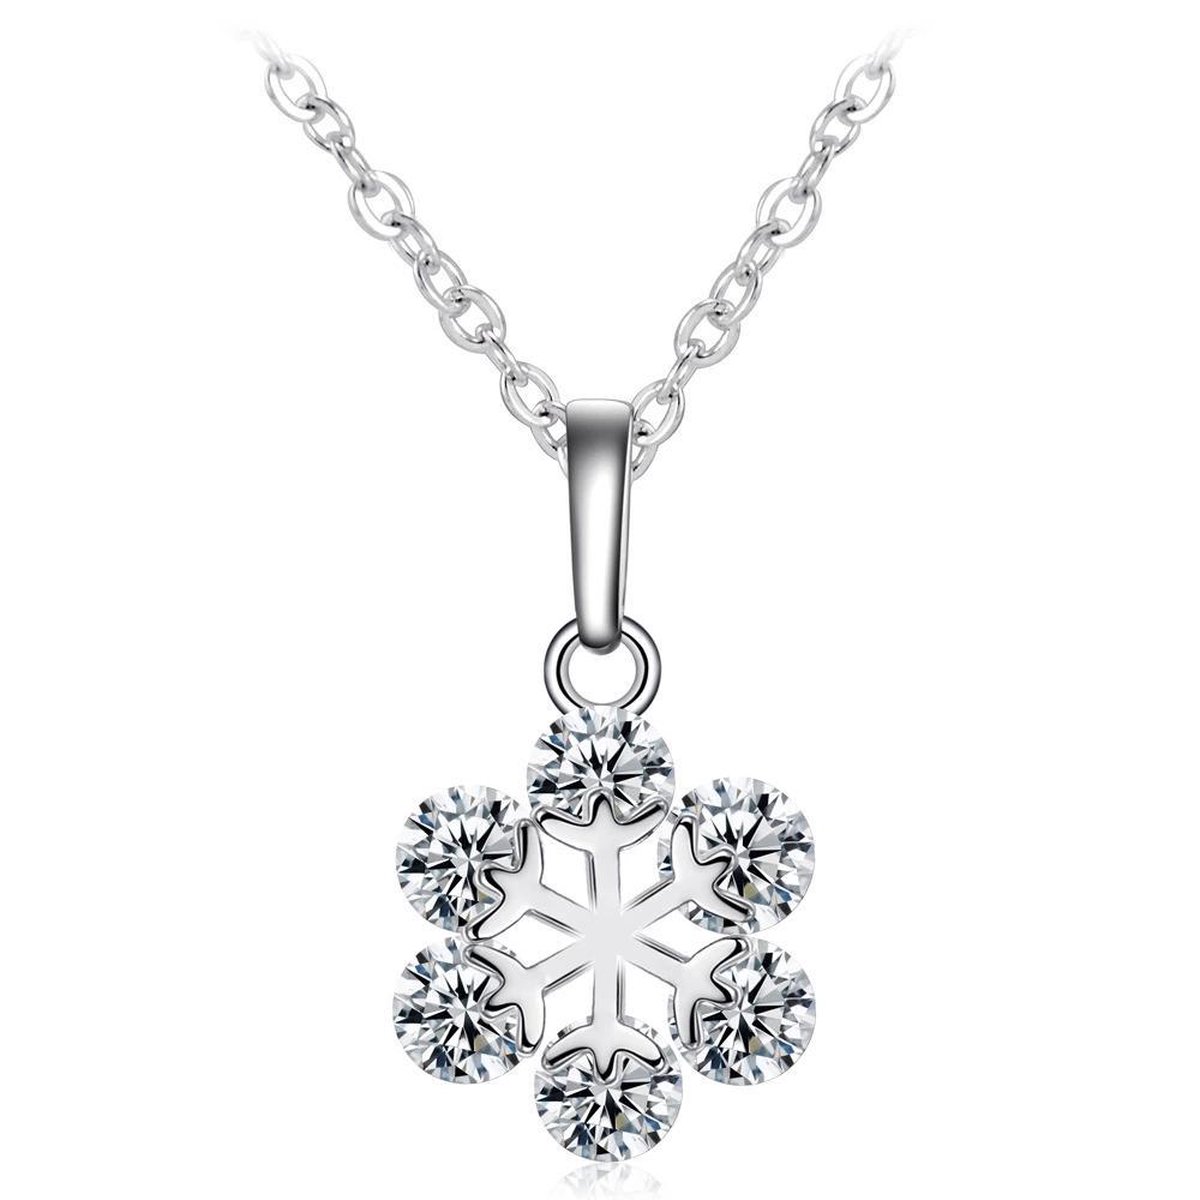 Fate Jewellery Ketting FJ409 - Snowflake - 45cm + 5cm - Zilverkleurig met zirkonia kristallen